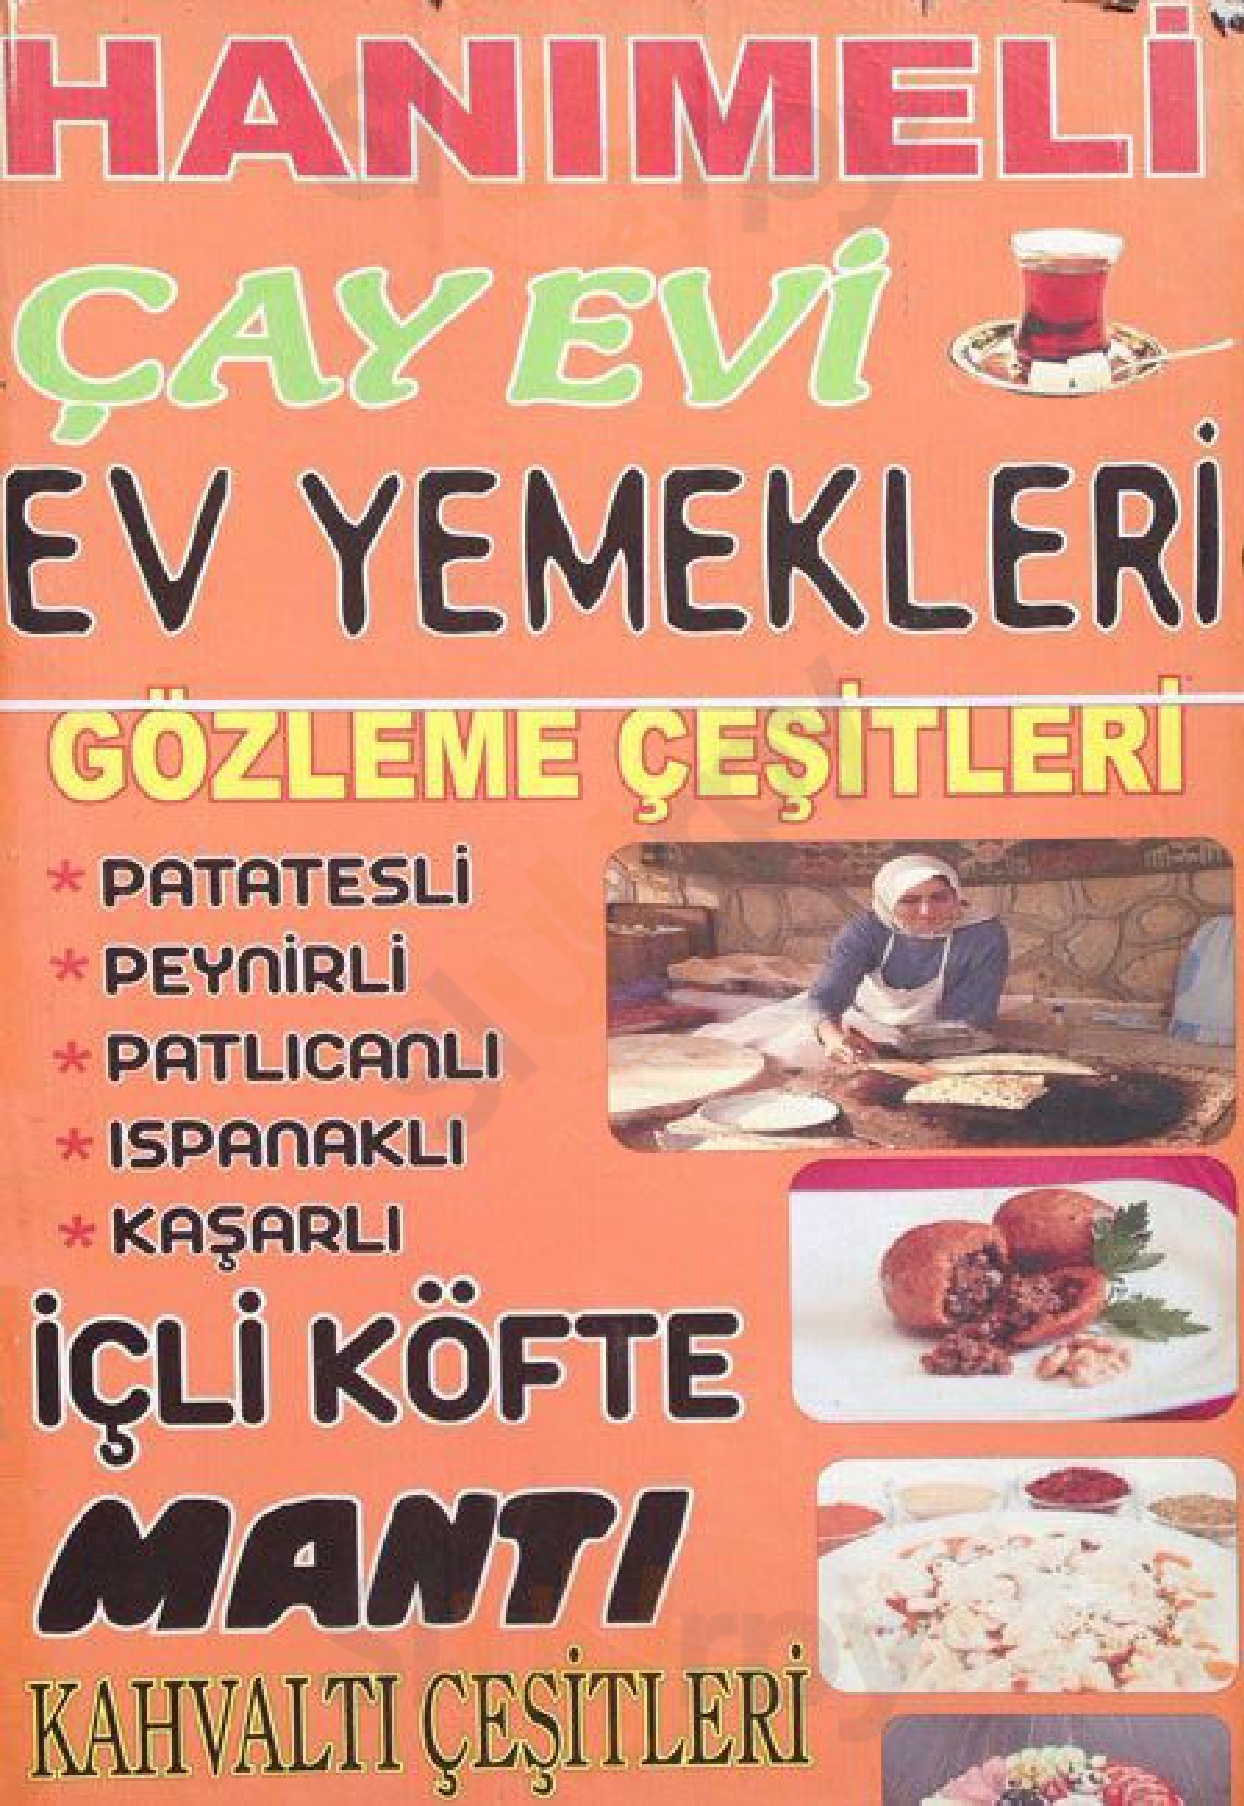 Hanımeli Çay Evi Ankara Menu - 1